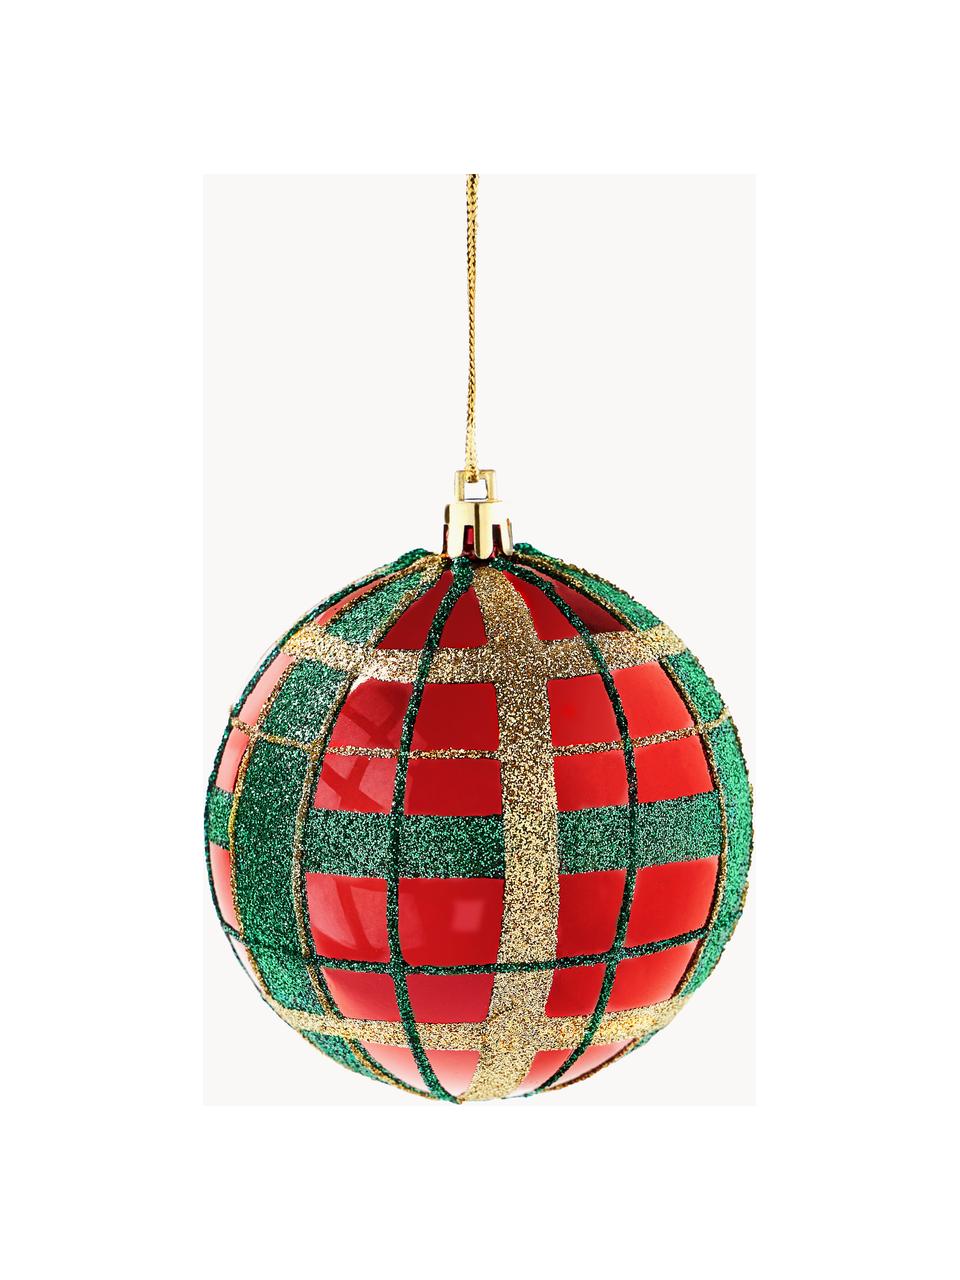 Breukvaste kerstballen Karo, 12 stuks, Kunststof, Rood, groen, goudkleurig, Ø 8 cm